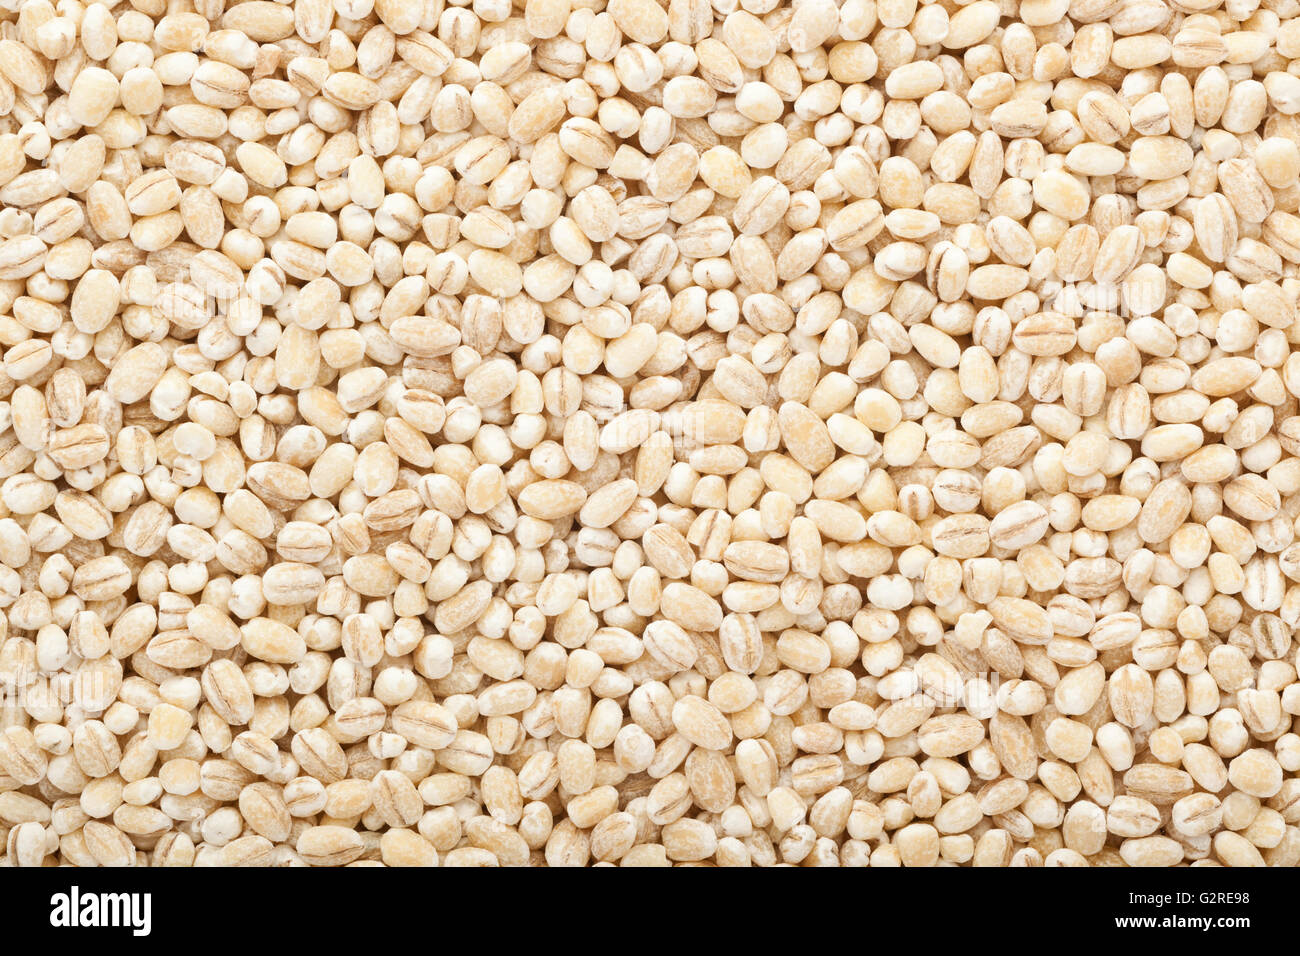 Closeup of lots of barley grains Stock Photo